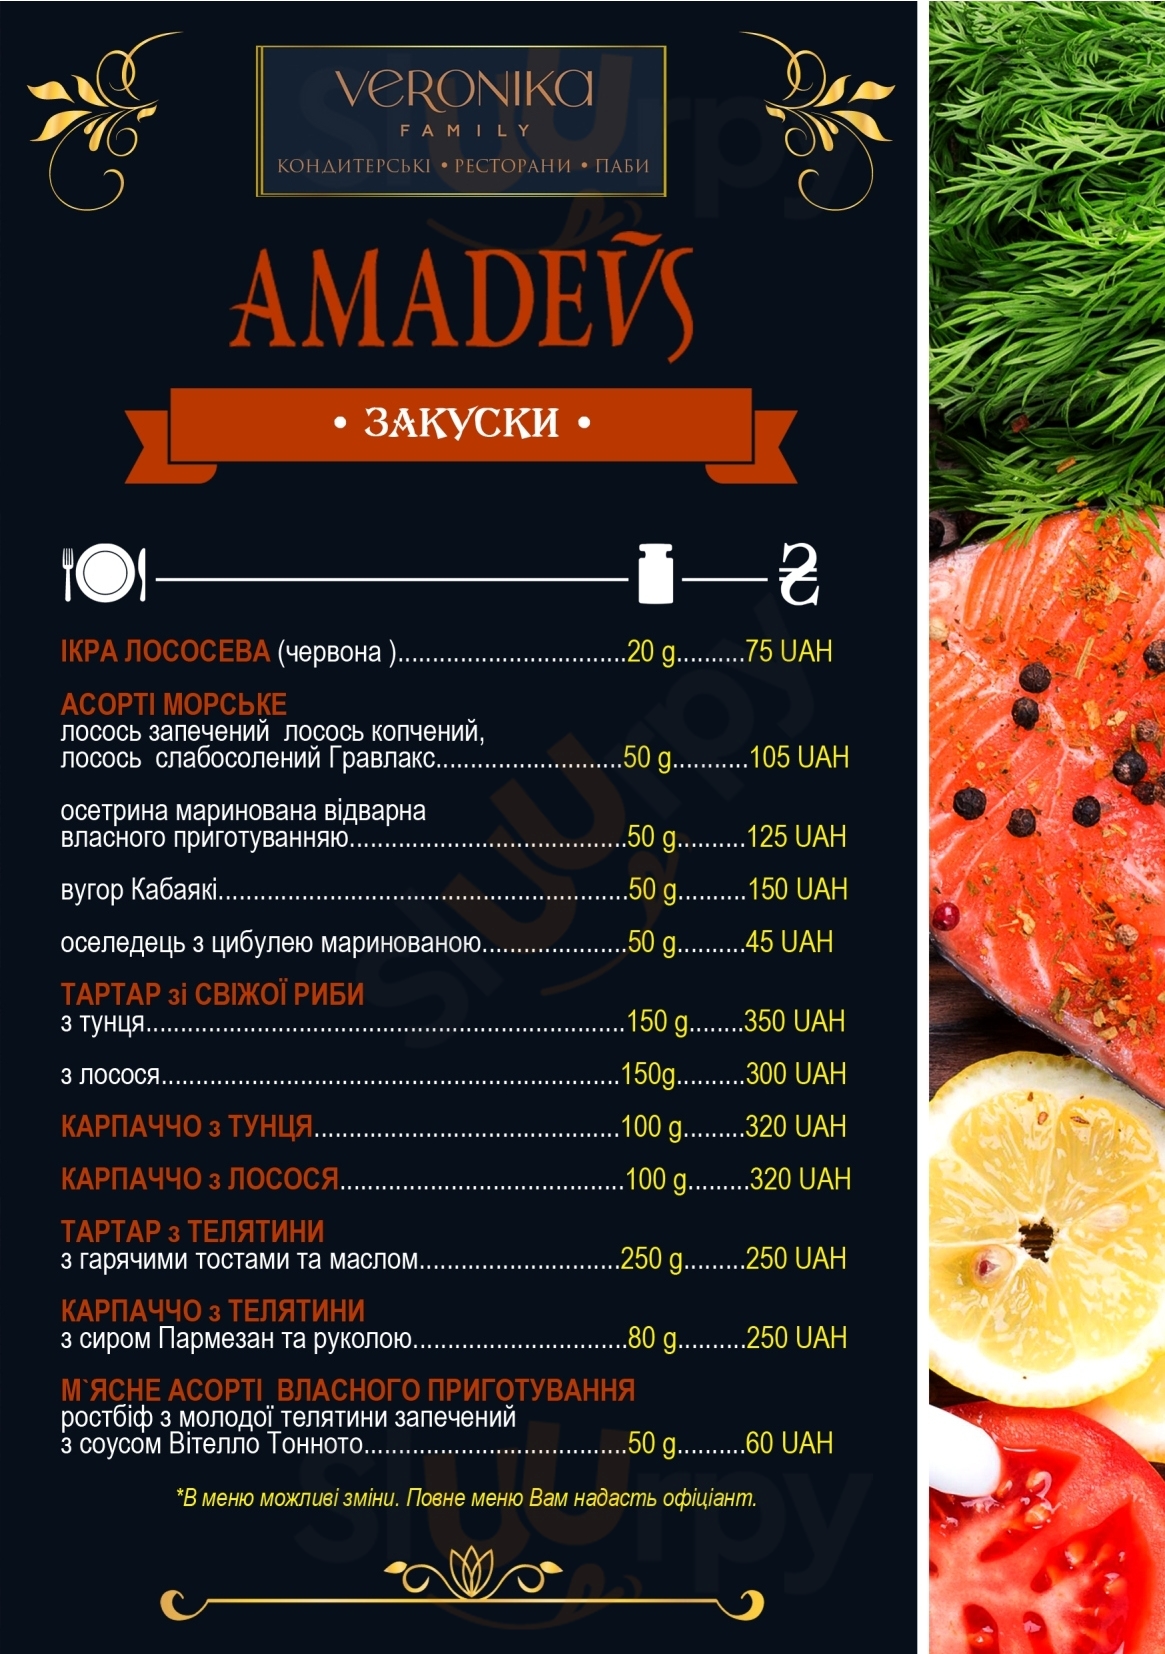 Amadeus Lviv Menu - 1